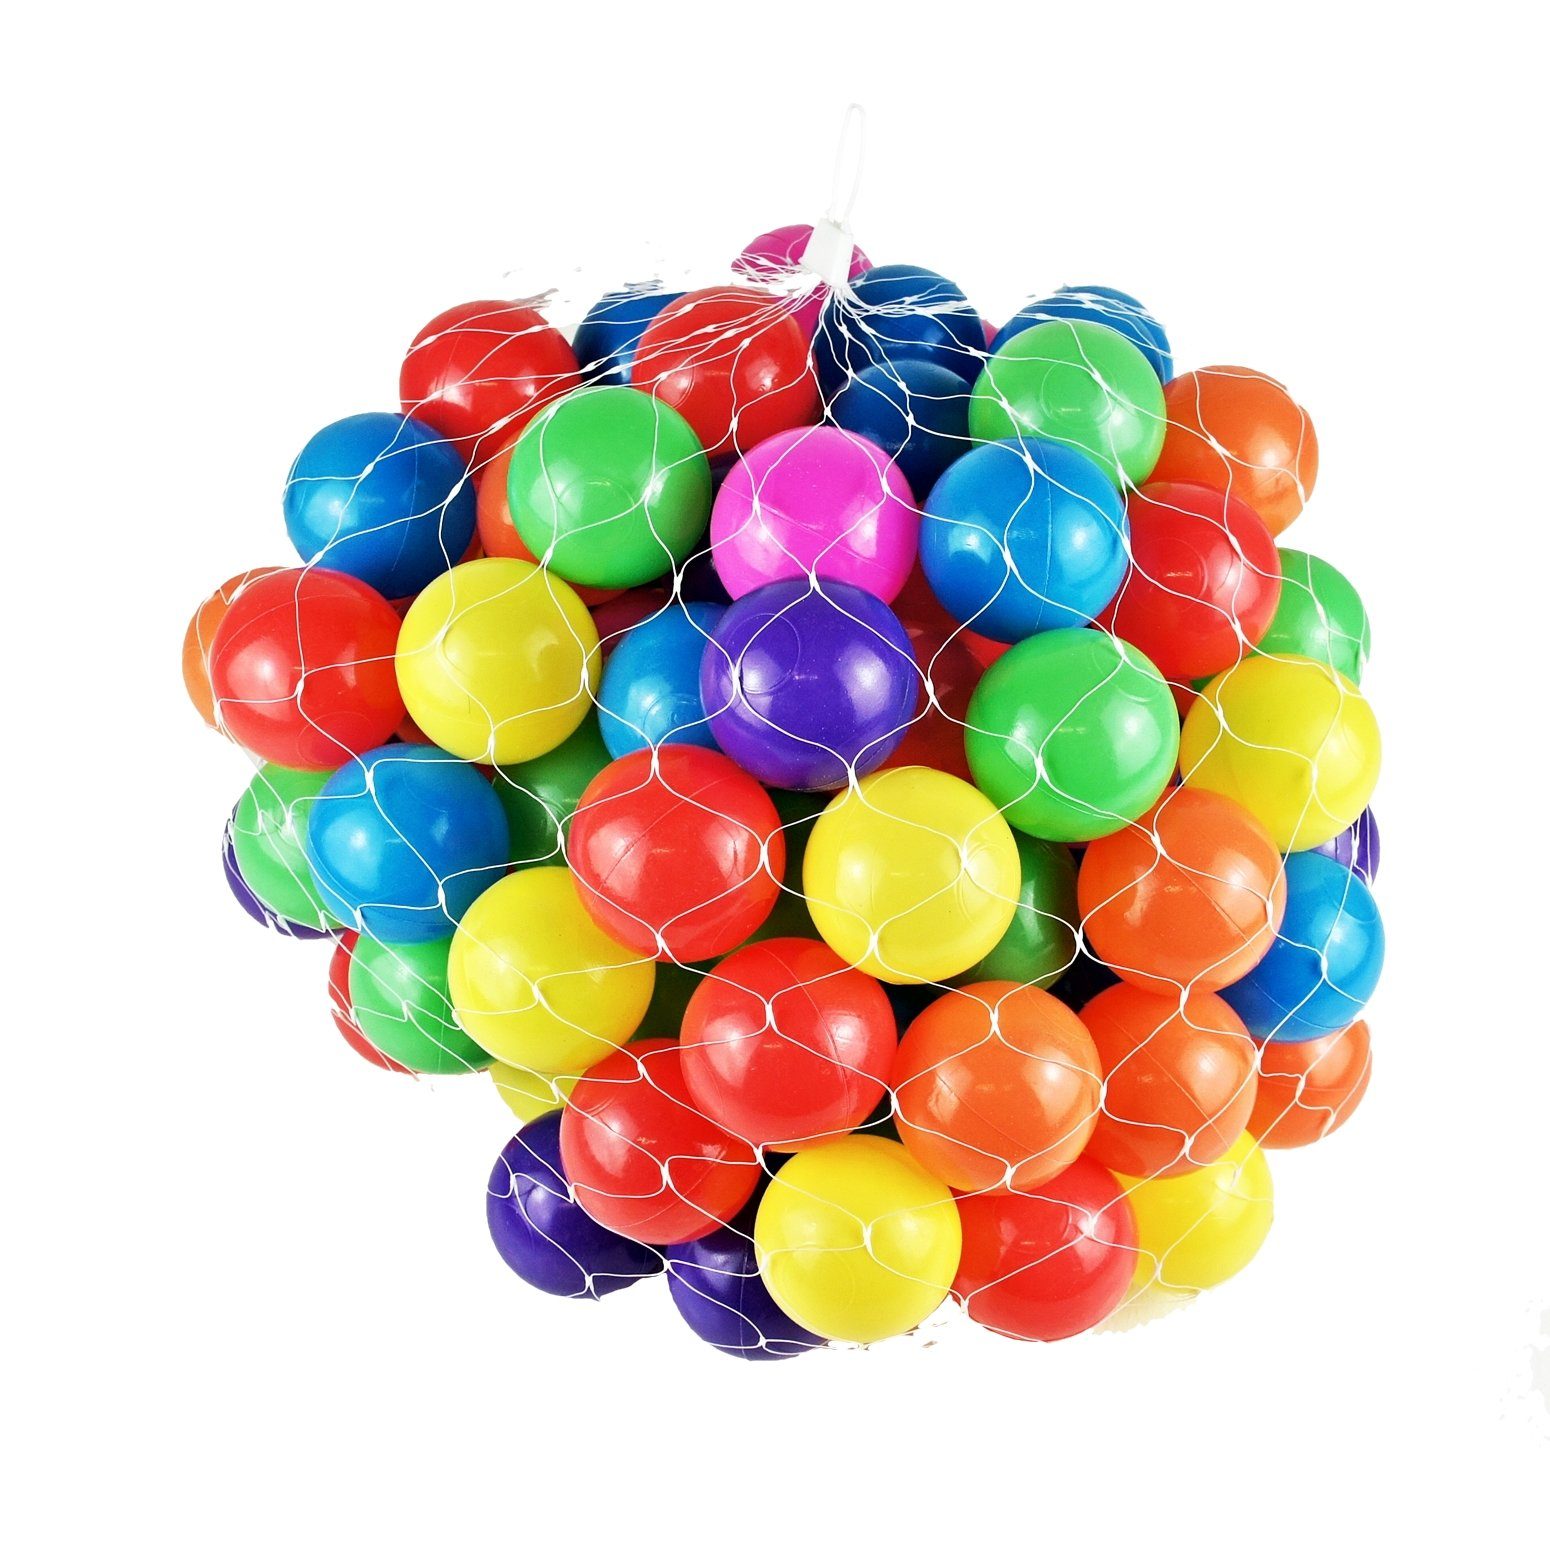 Ball Bällebad-Bälle Mischung - 5,5cm Softball Ø - Bällebad Bälle BAYLI bunte Farben 2700